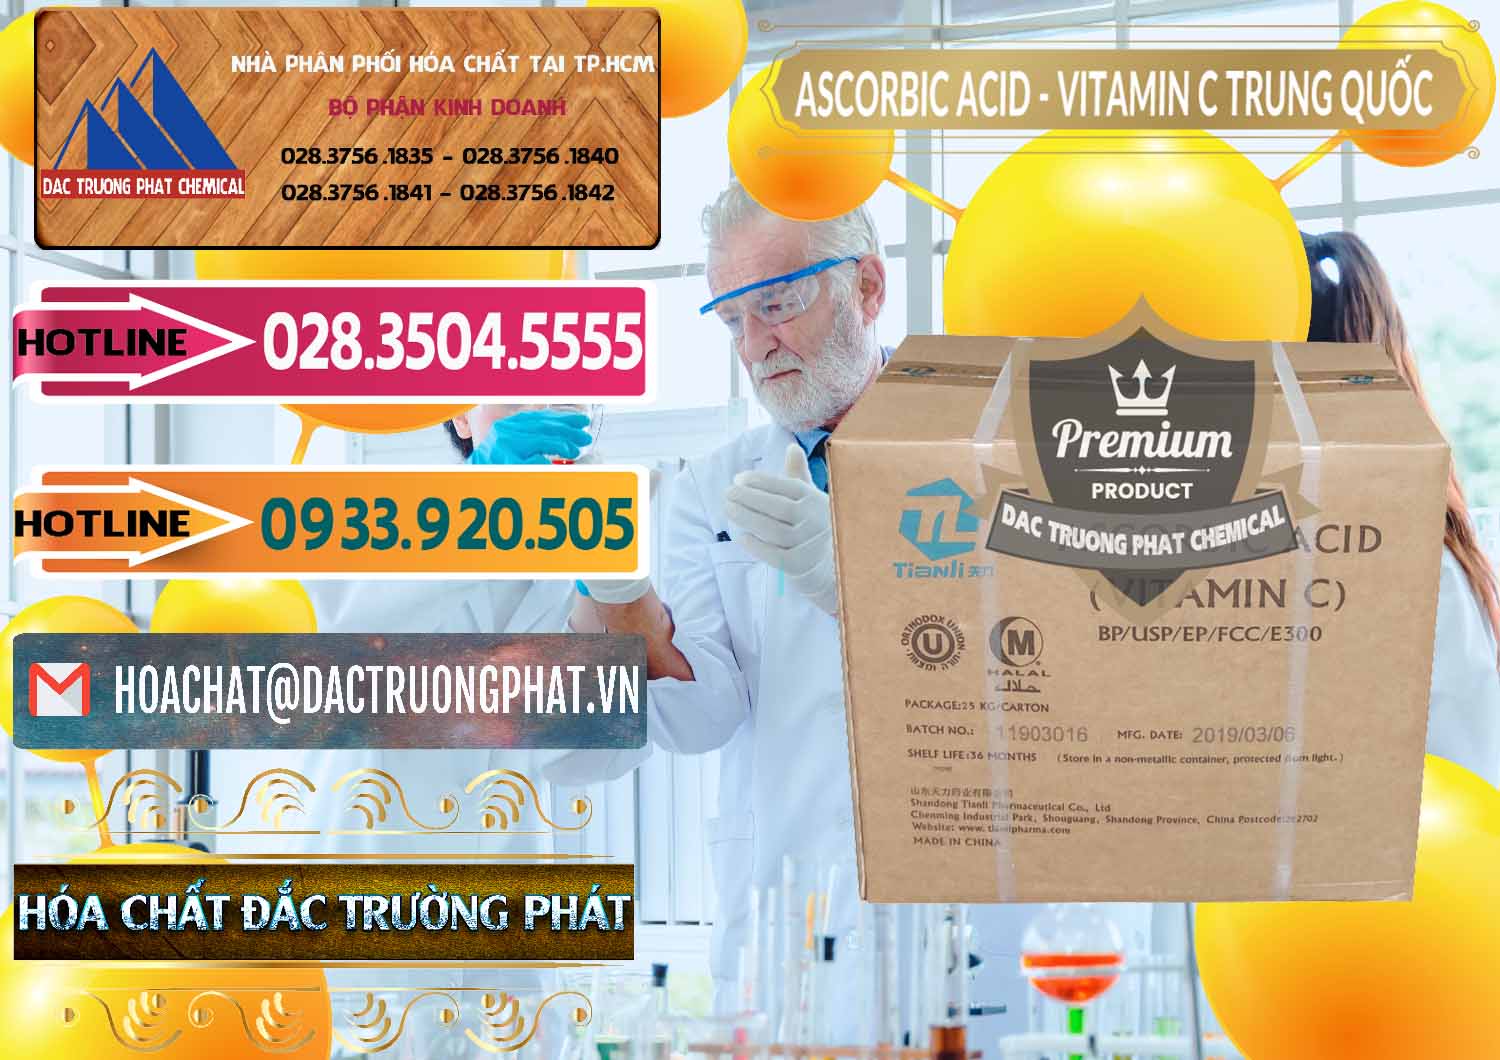 Nơi chuyên bán - cung cấp Axit Ascorbic - Vitamin C Trung Quốc China - 0309 - Cty chuyên cung cấp _ nhập khẩu hóa chất tại TP.HCM - dactruongphat.vn